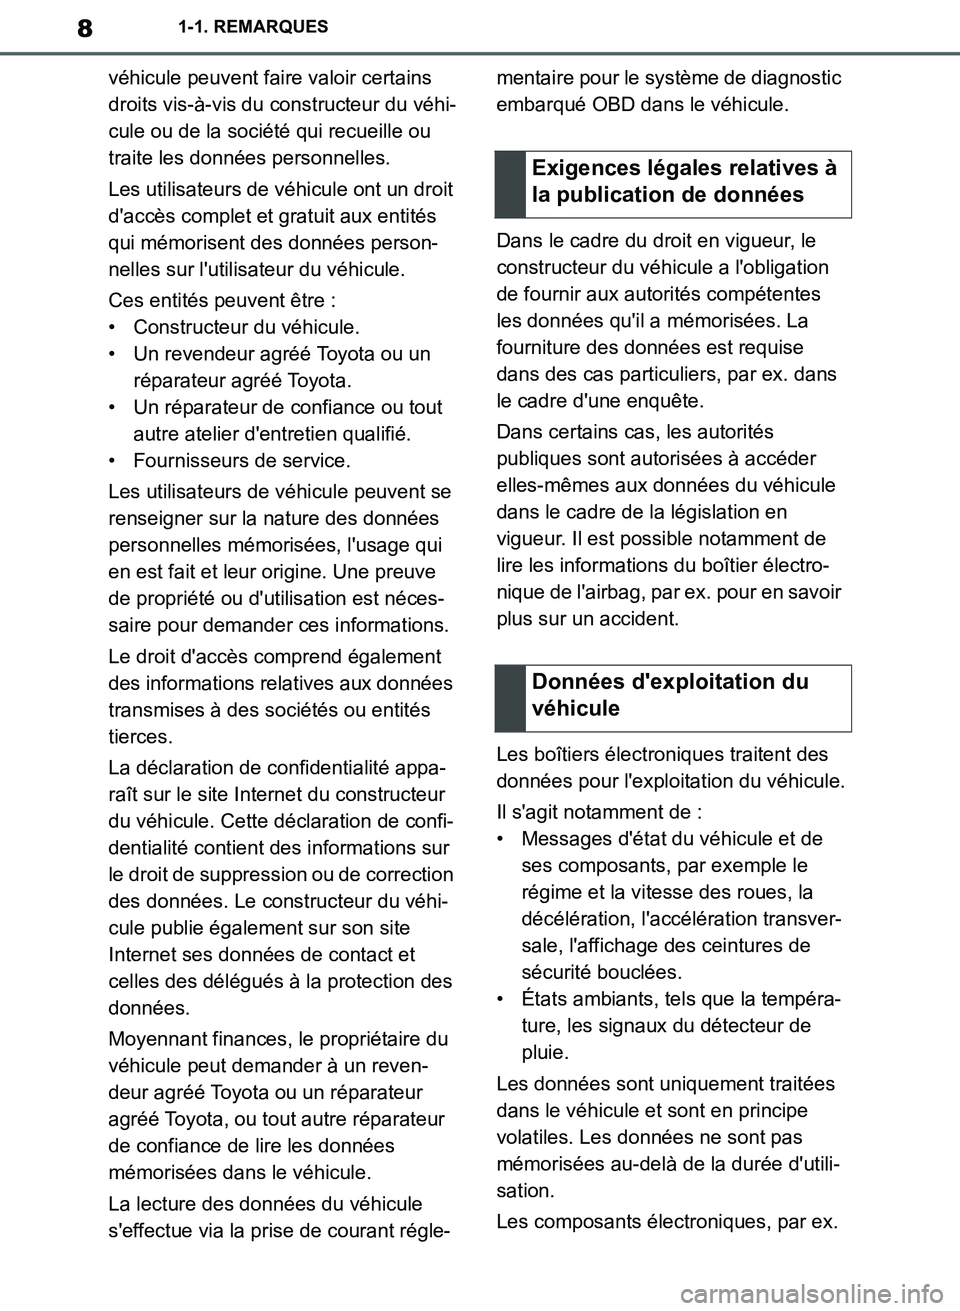 TOYOTA SUPRA 2019  Notices Demploi (in French) 8
Supra Owners Manual_EK
1-1. REMARQUES
véhicule peuvent faire valoir certains 
droits vis-à-vis du constructeur du véhi-
cule ou de la société qui recueille ou 
traite les données personnelles